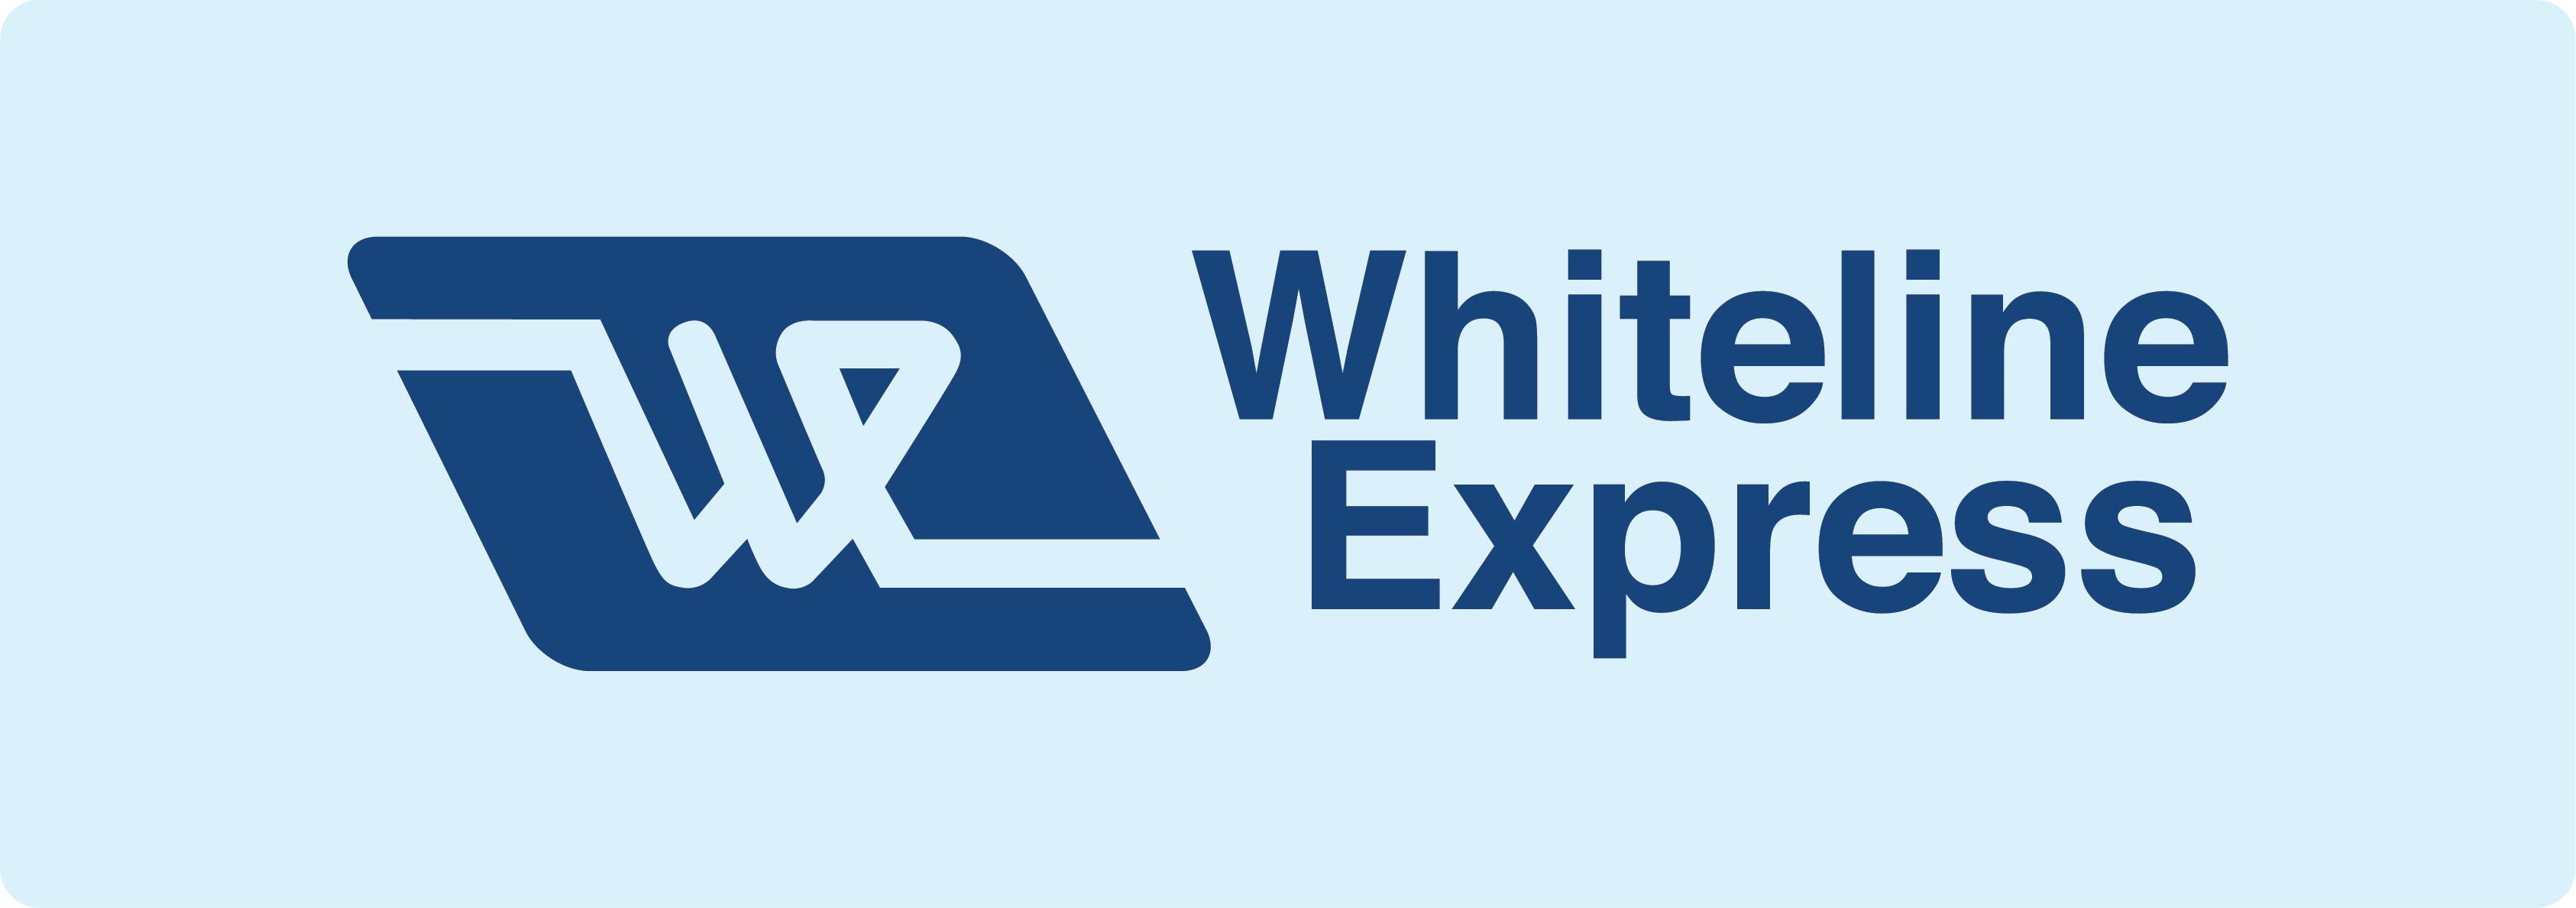 Whiteline Express logo